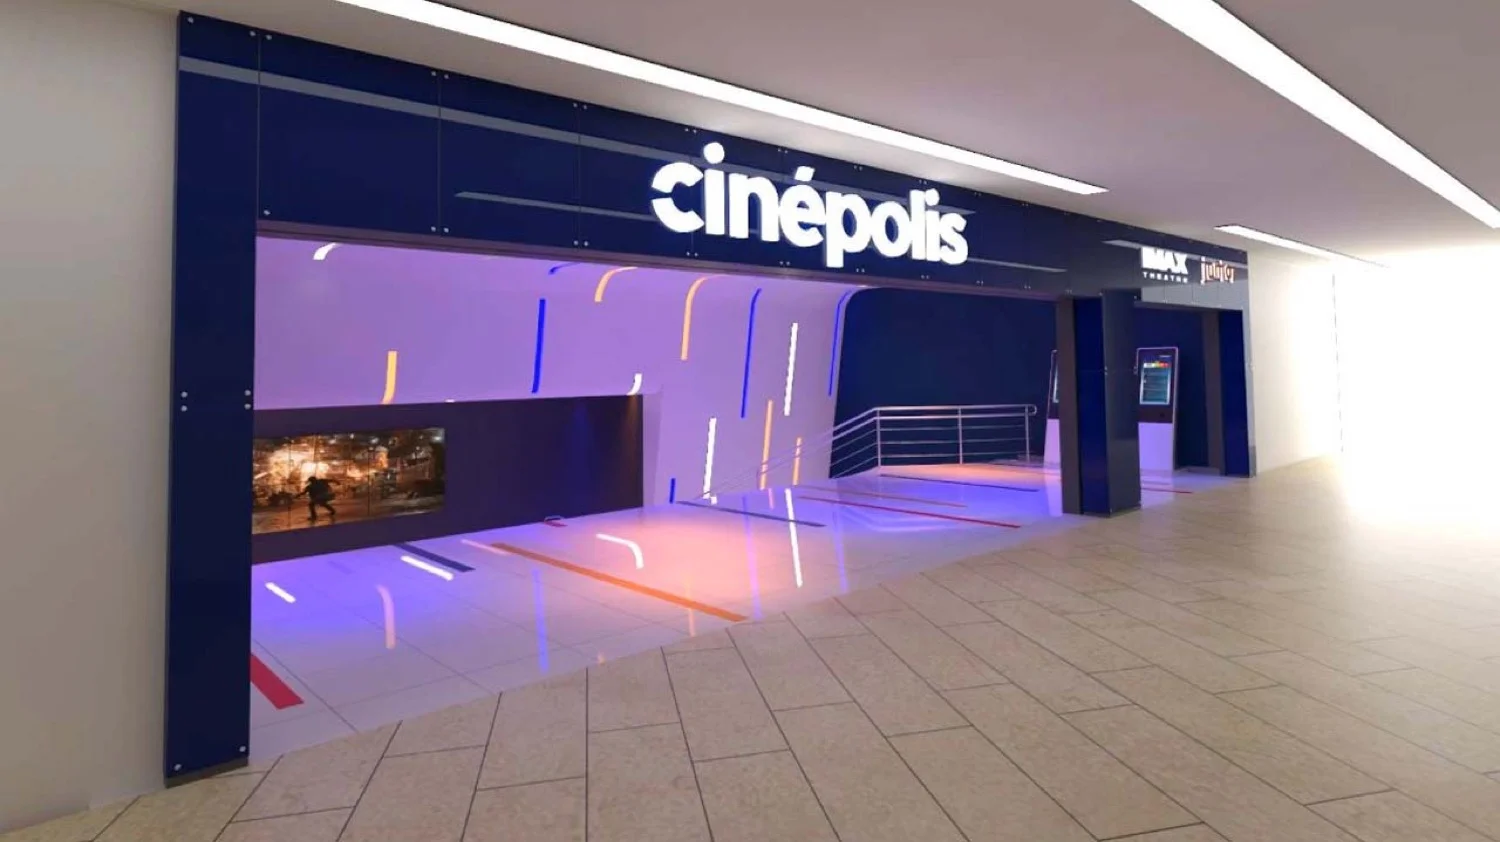 El nuevo Cinepolis ubicado en Larcomar